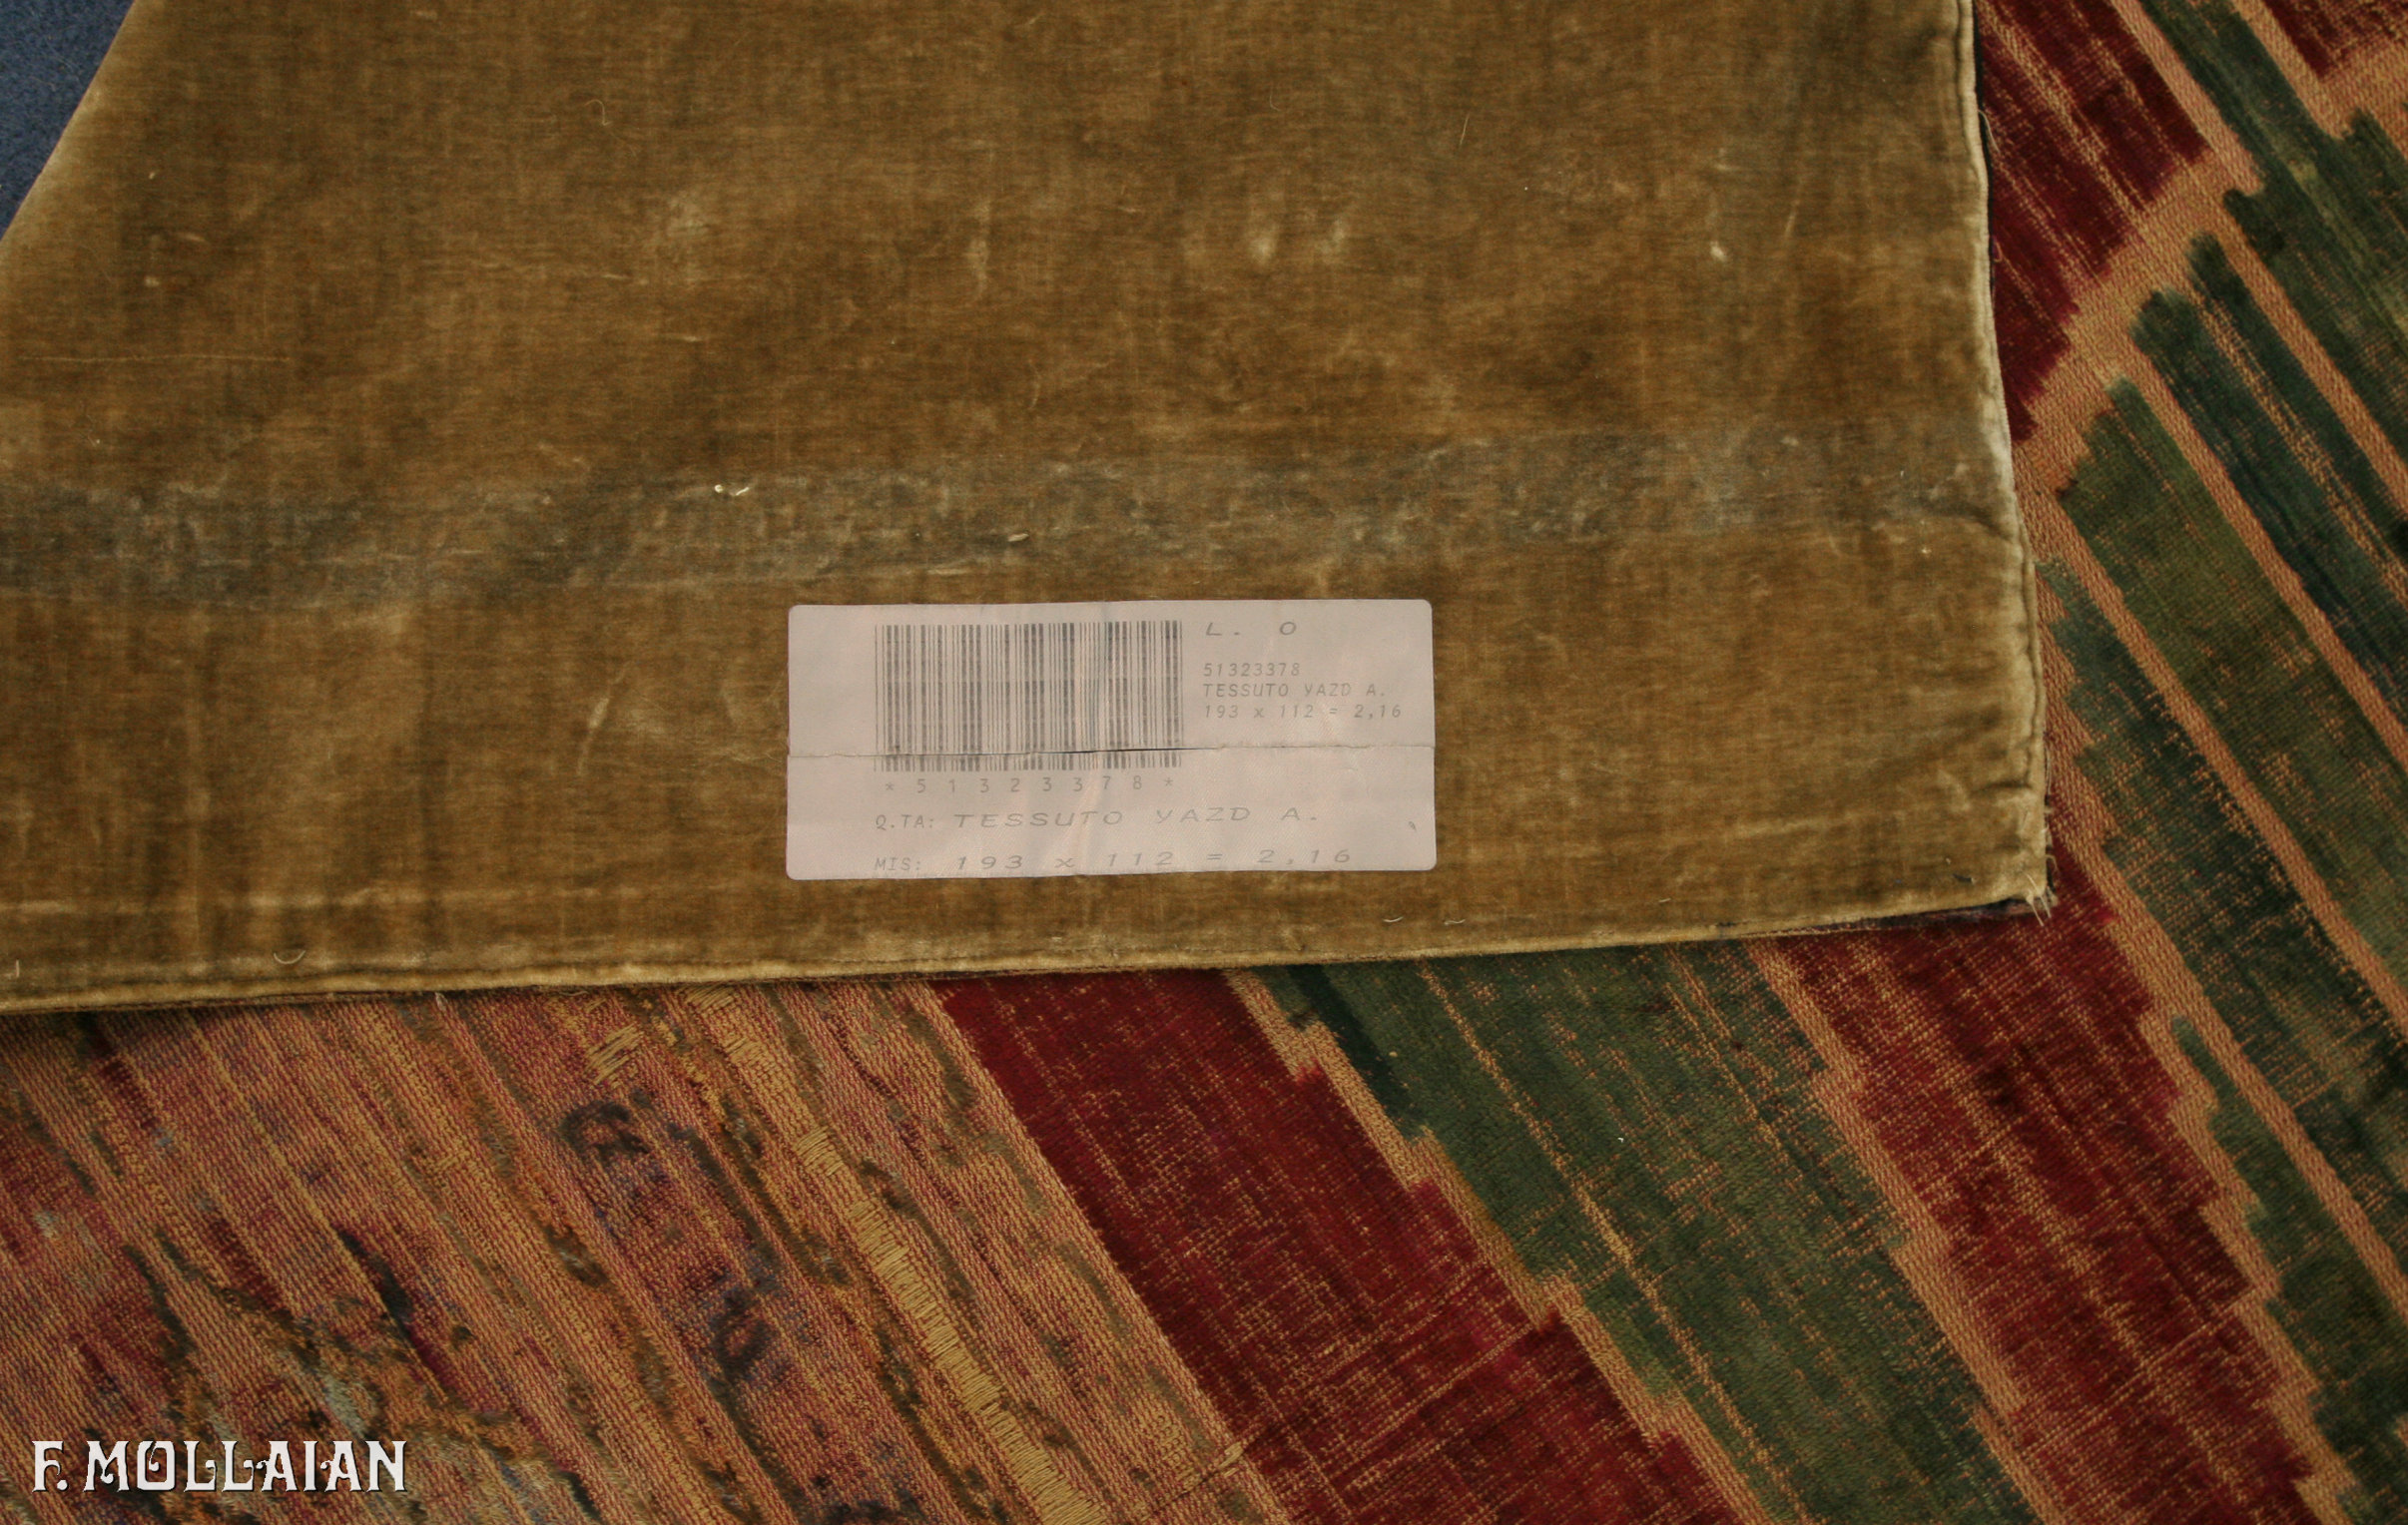 Textil Persischer Antiker Yazd (Velvet) n°:51323378